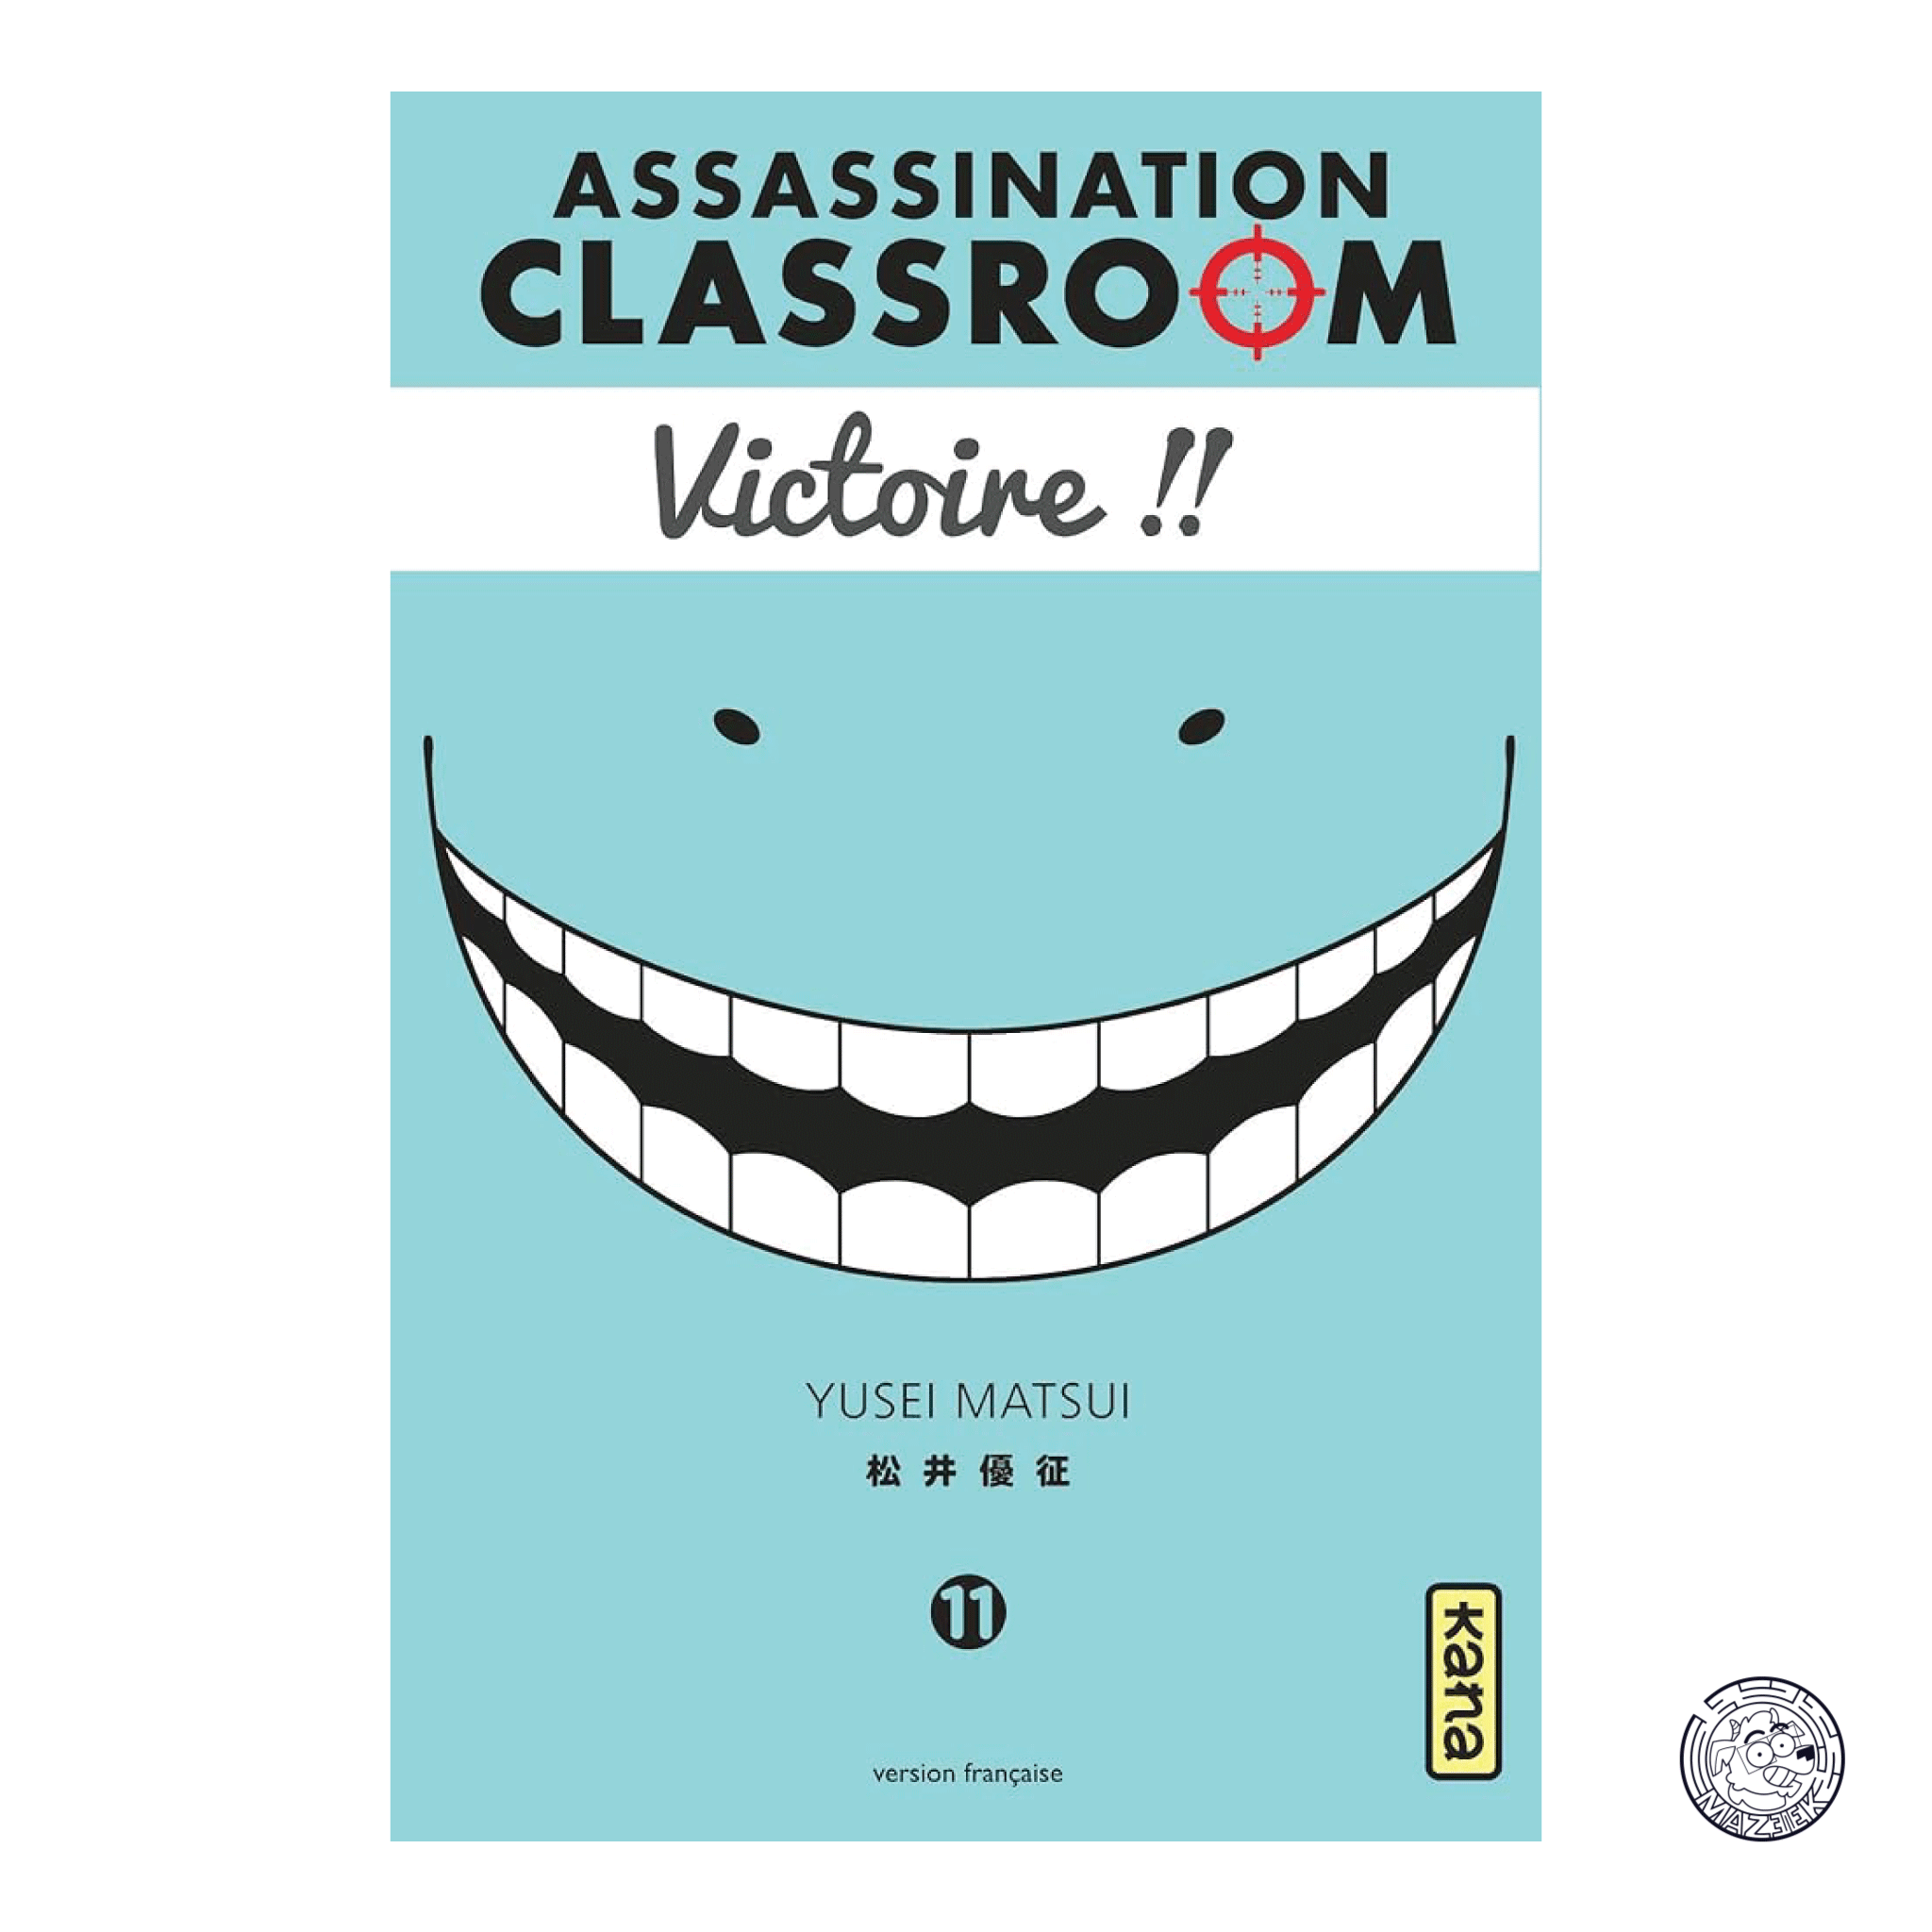 Assassination Classroom 11 - Reprint 1